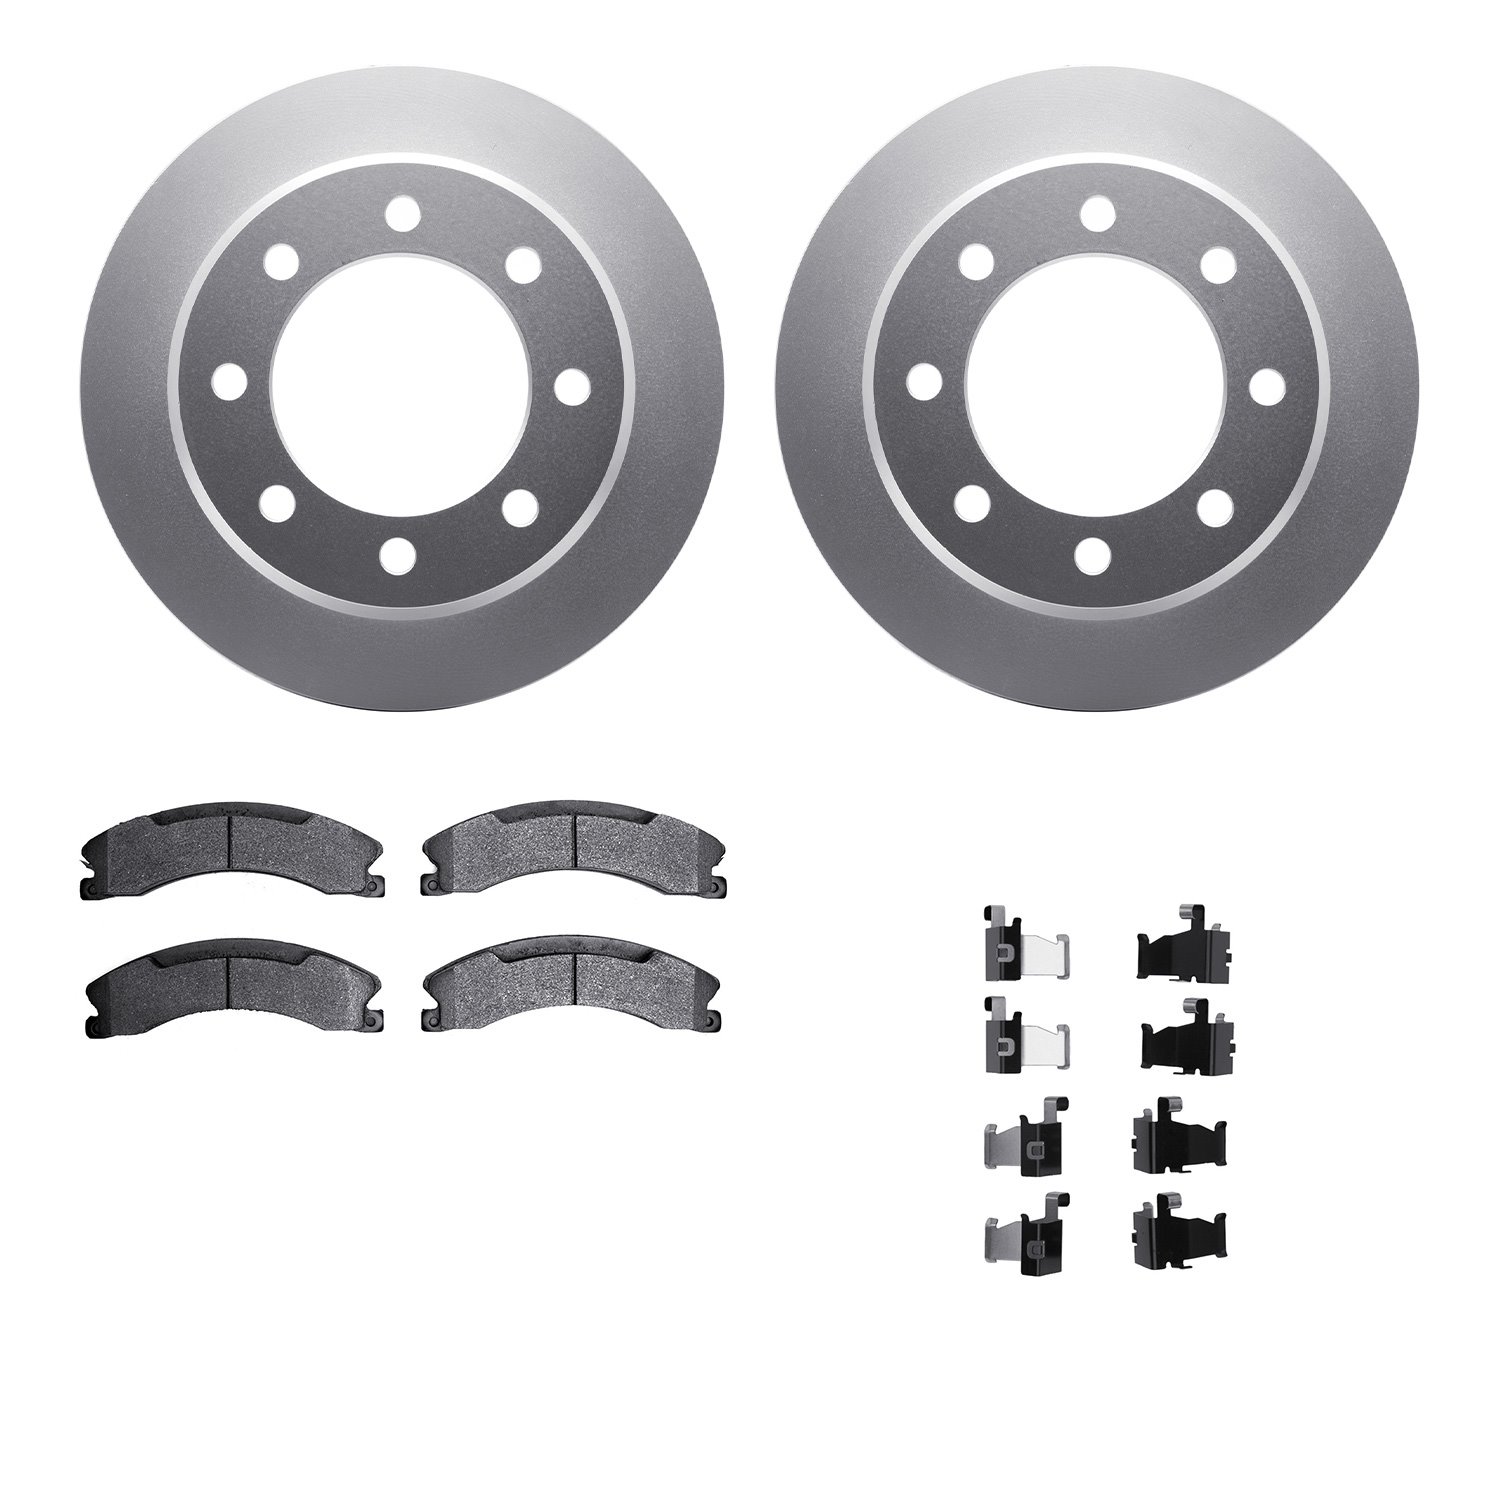 4212-48019 Geospec Brake Rotors w/Heavy-Duty Brake Pads & Hardware, 2009-2020 GM, Position: Rear